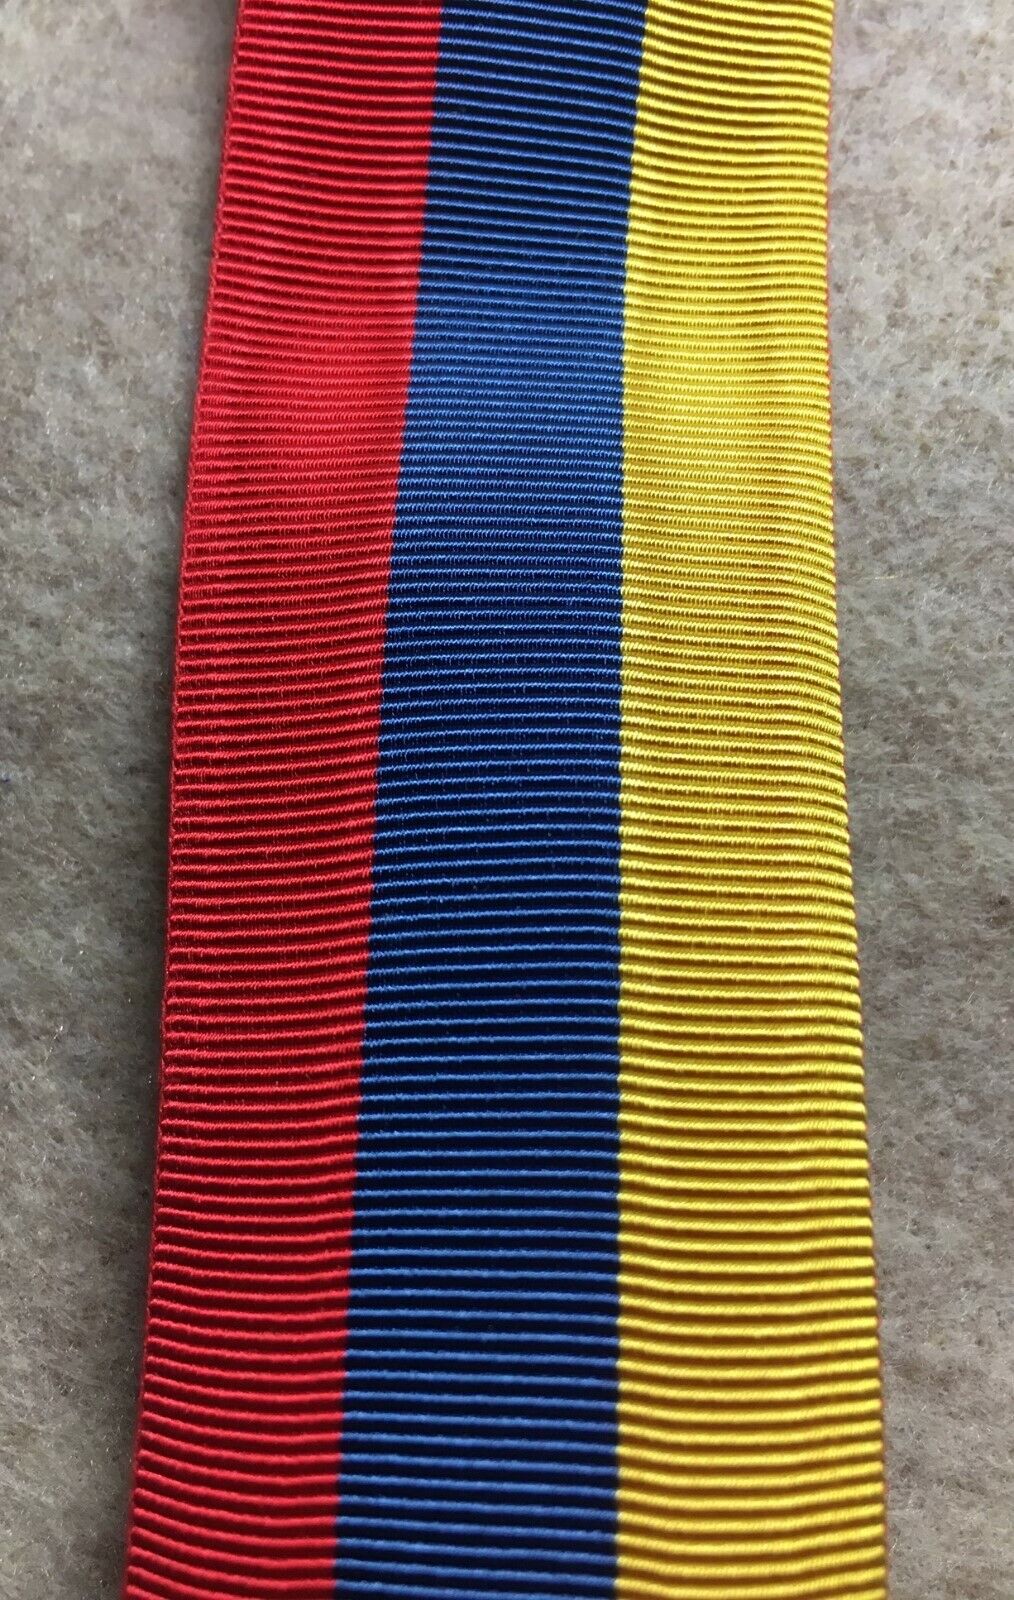 Venezuela - Ribbon for Order of Simon Bolivar